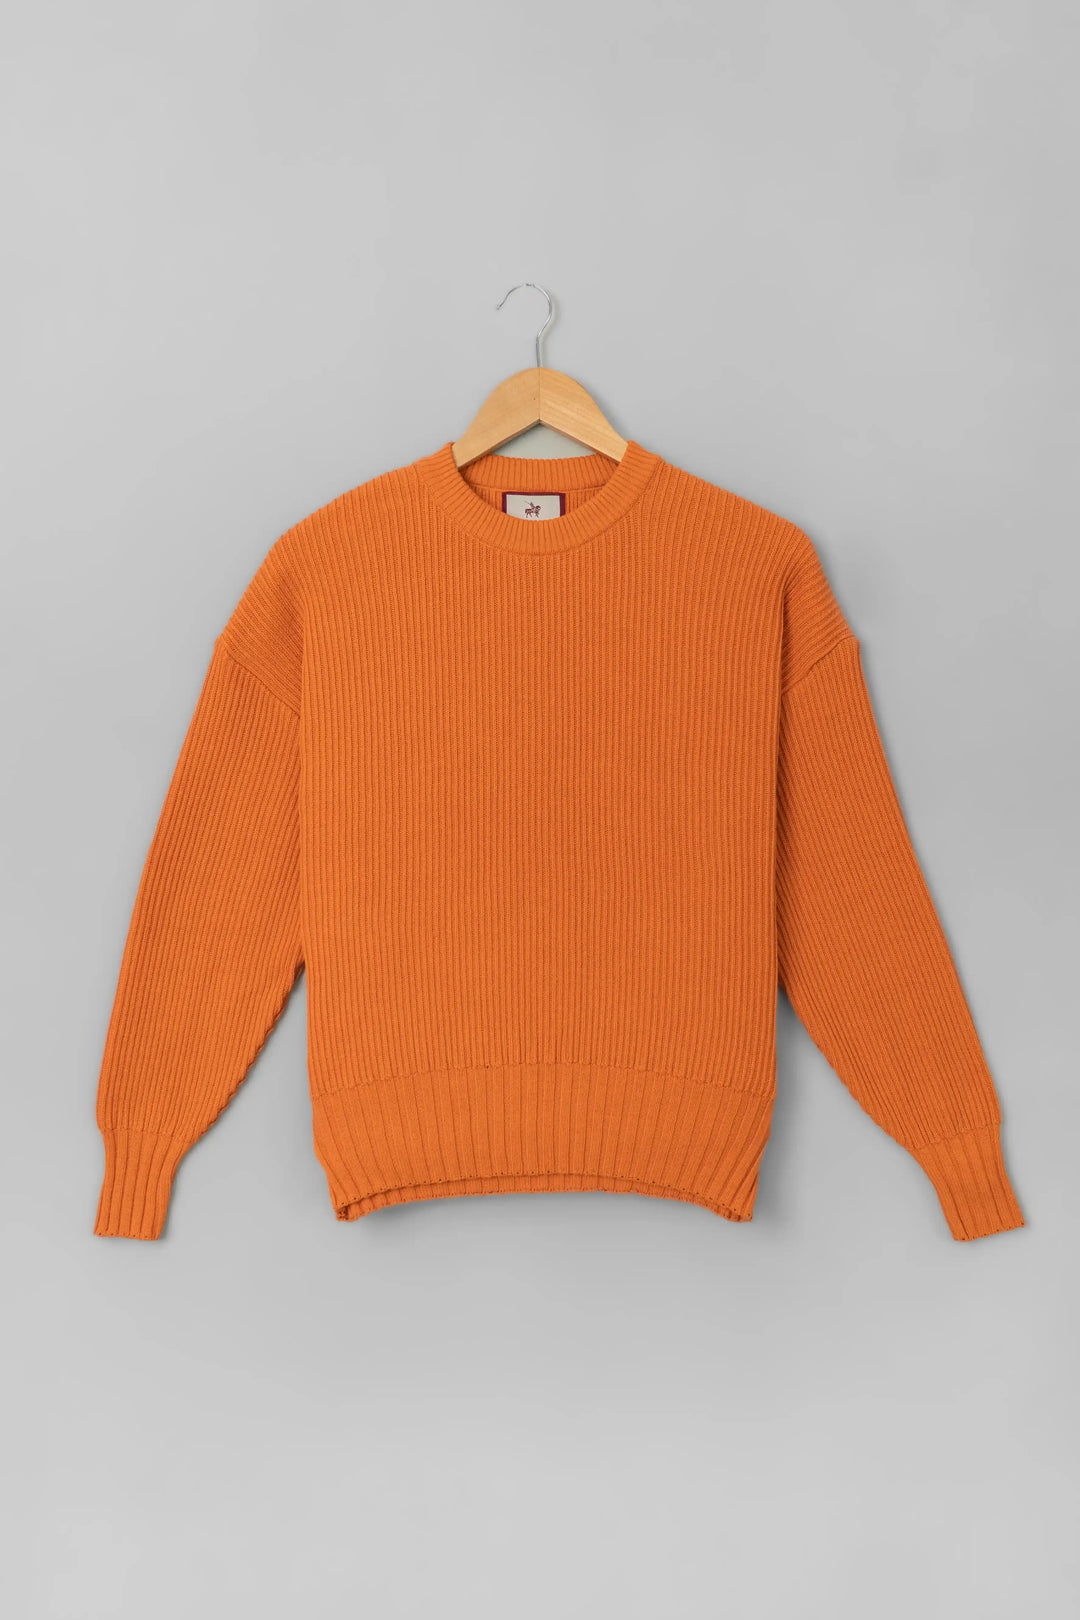 Suéter Malibu Mujer Naranja